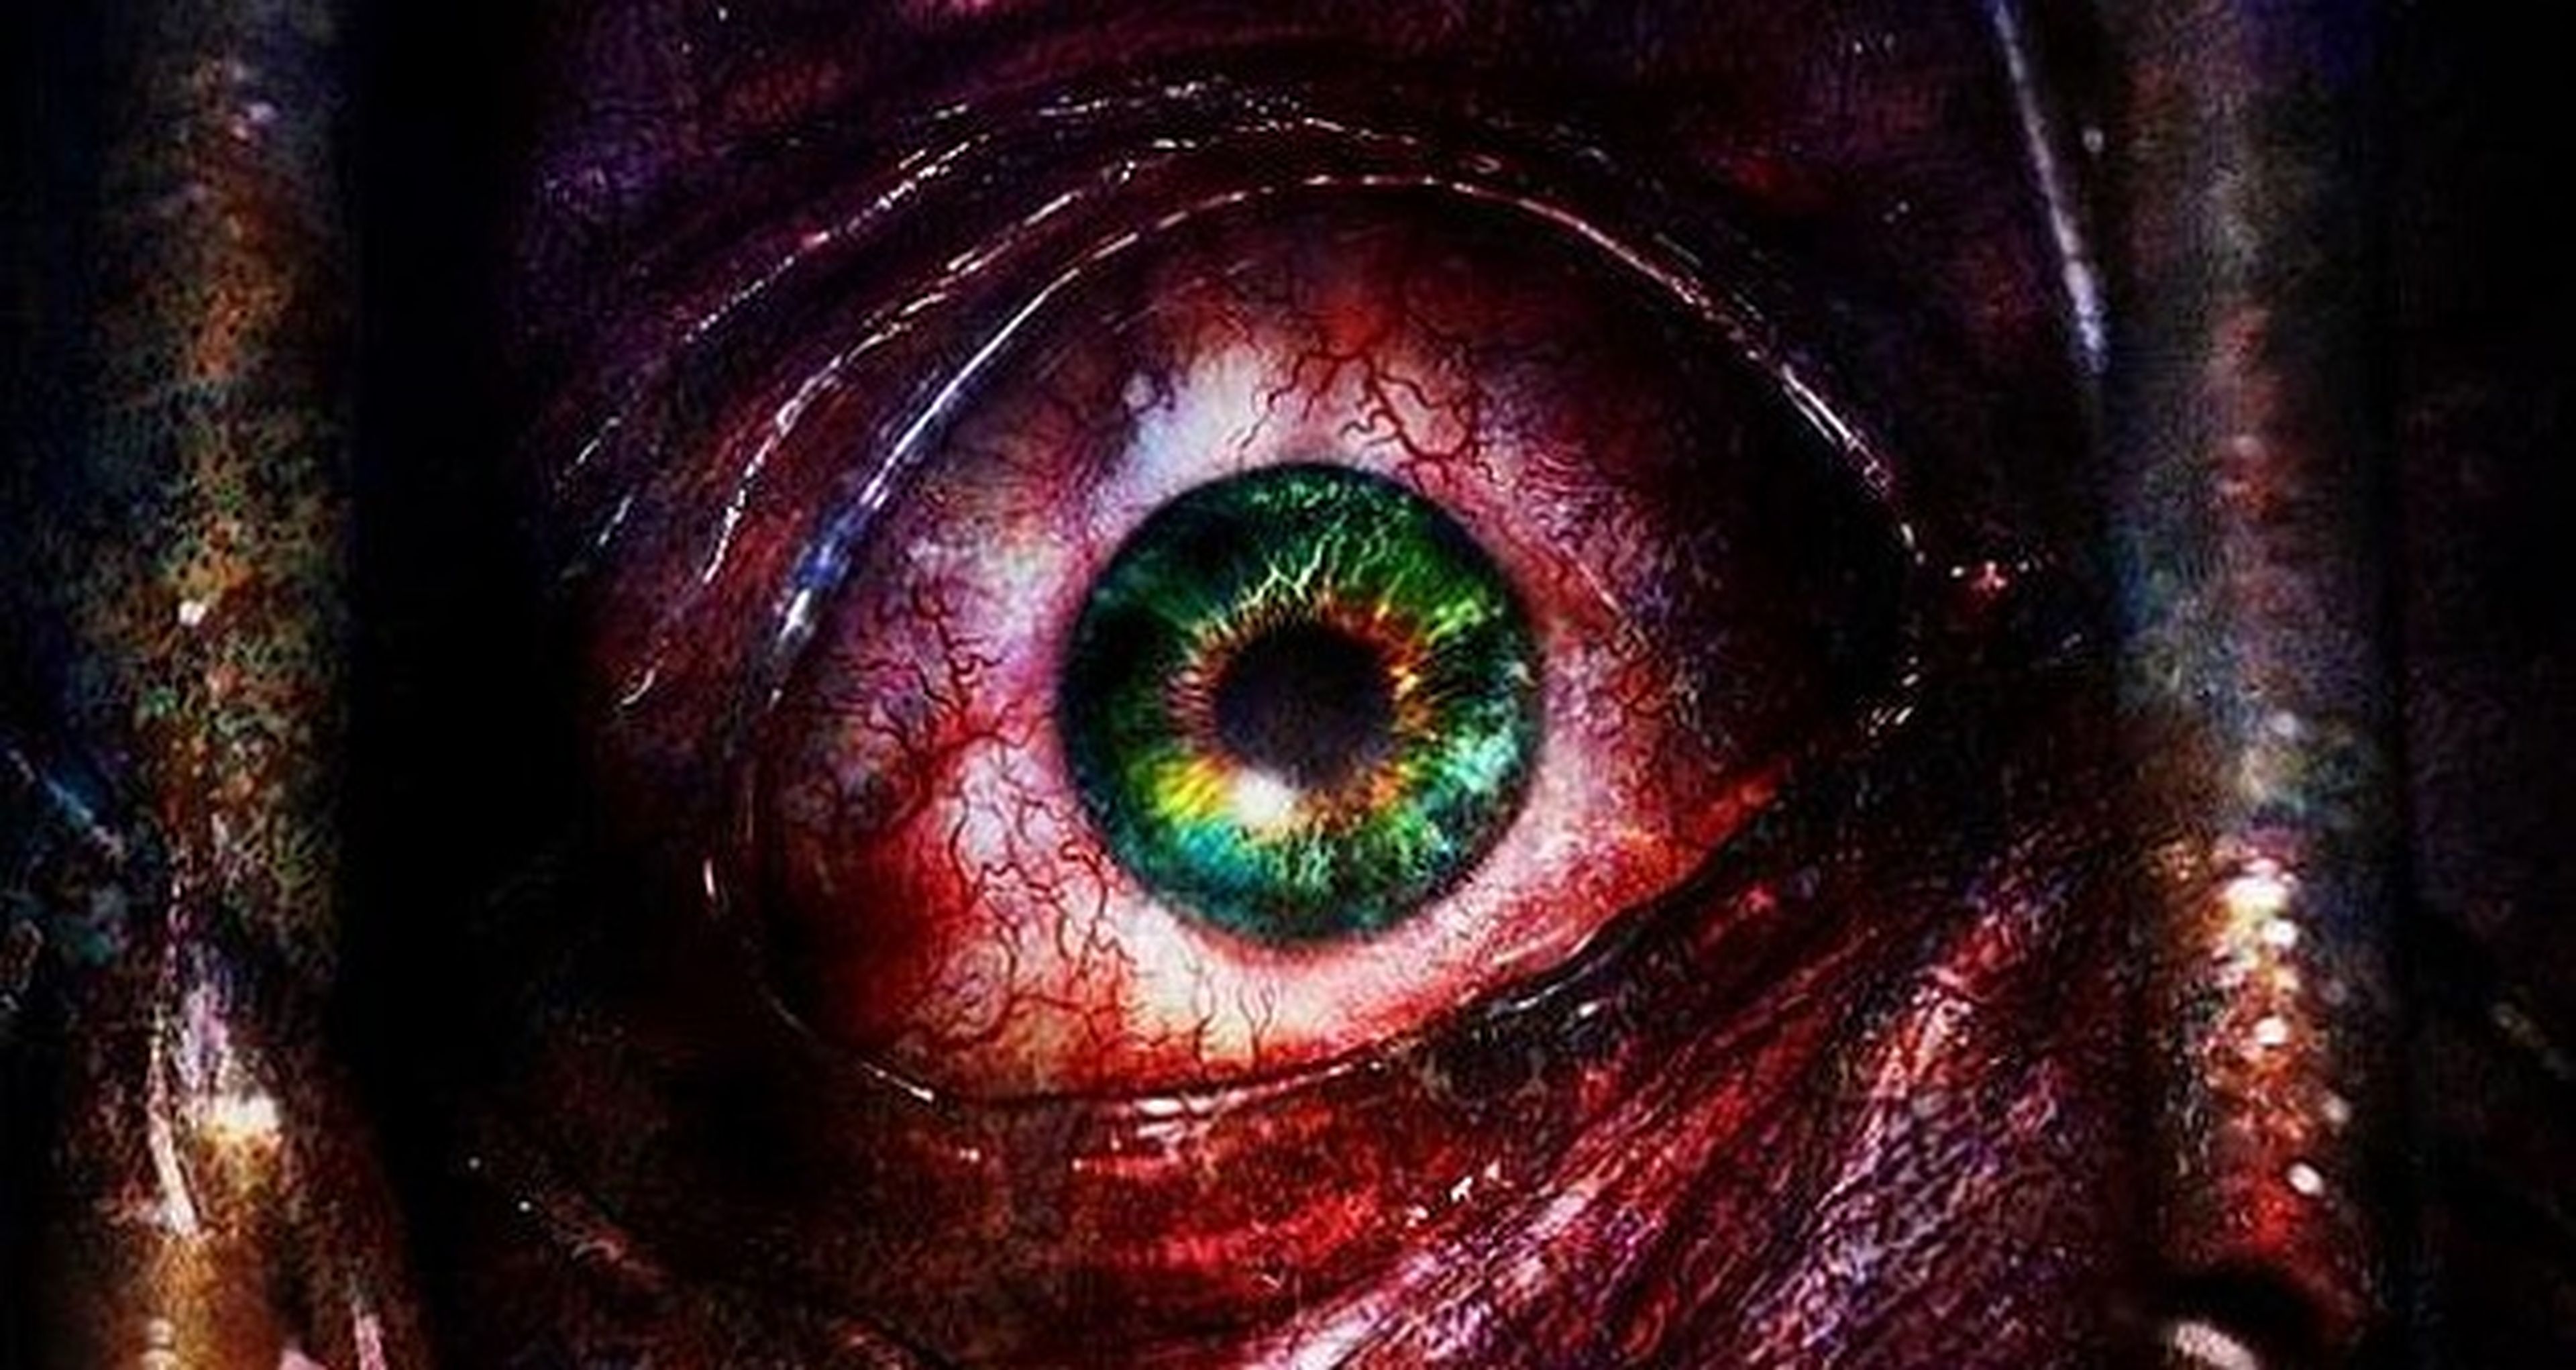 Primeras imágenes conceptuales de Resident Evil Revelations 2